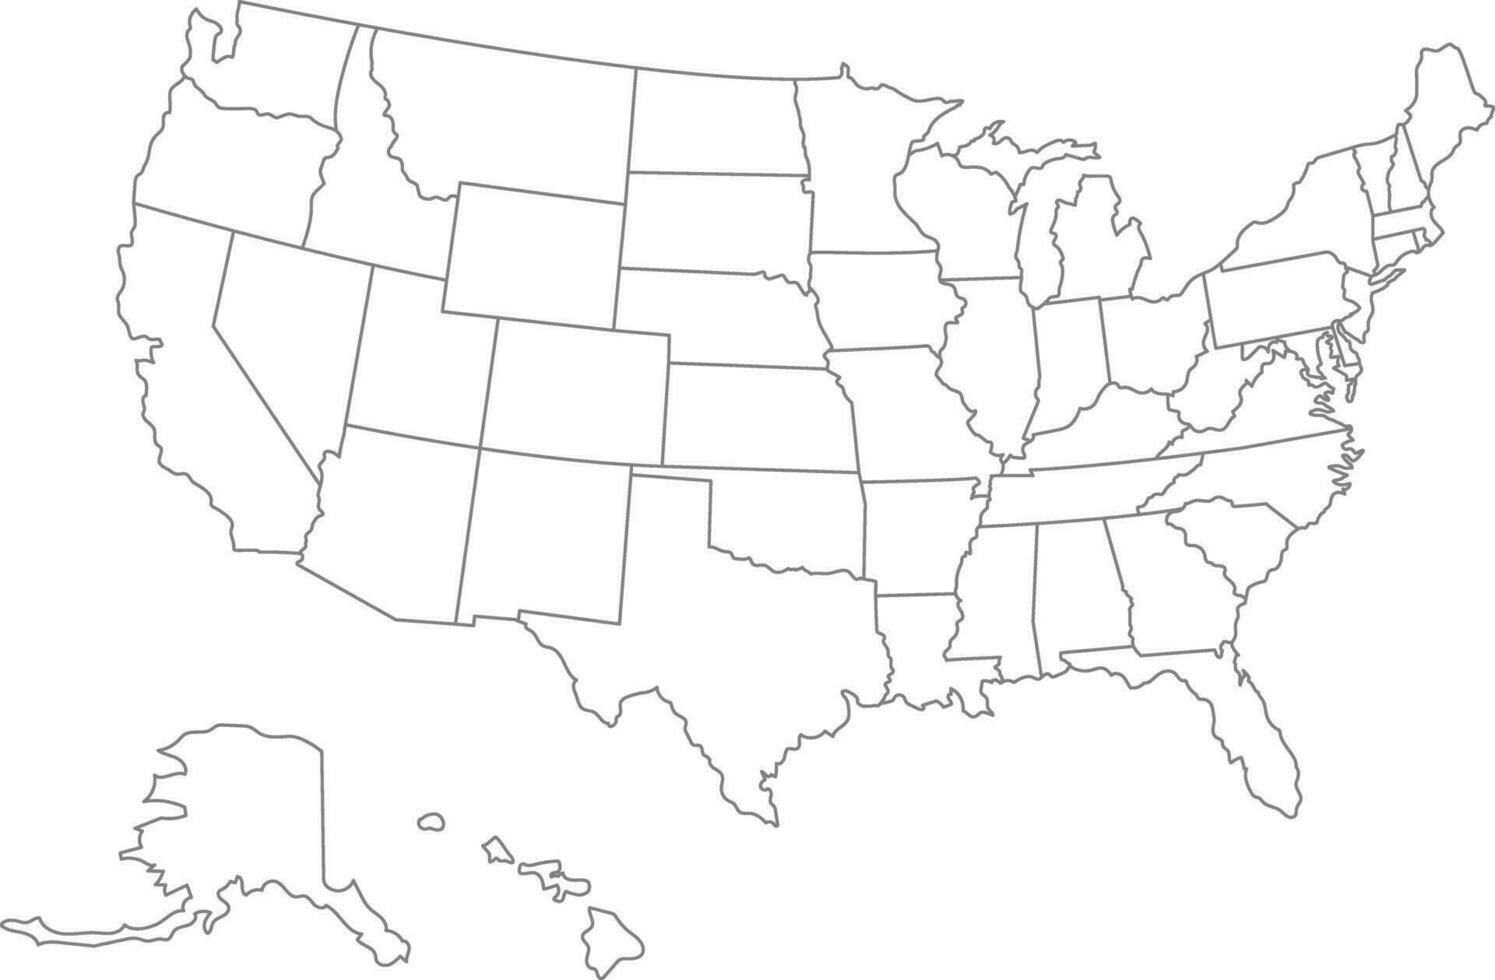 unido estados de America mapa. Estados Unidos mapa con dividido estados contorno nosotros mapa. vector